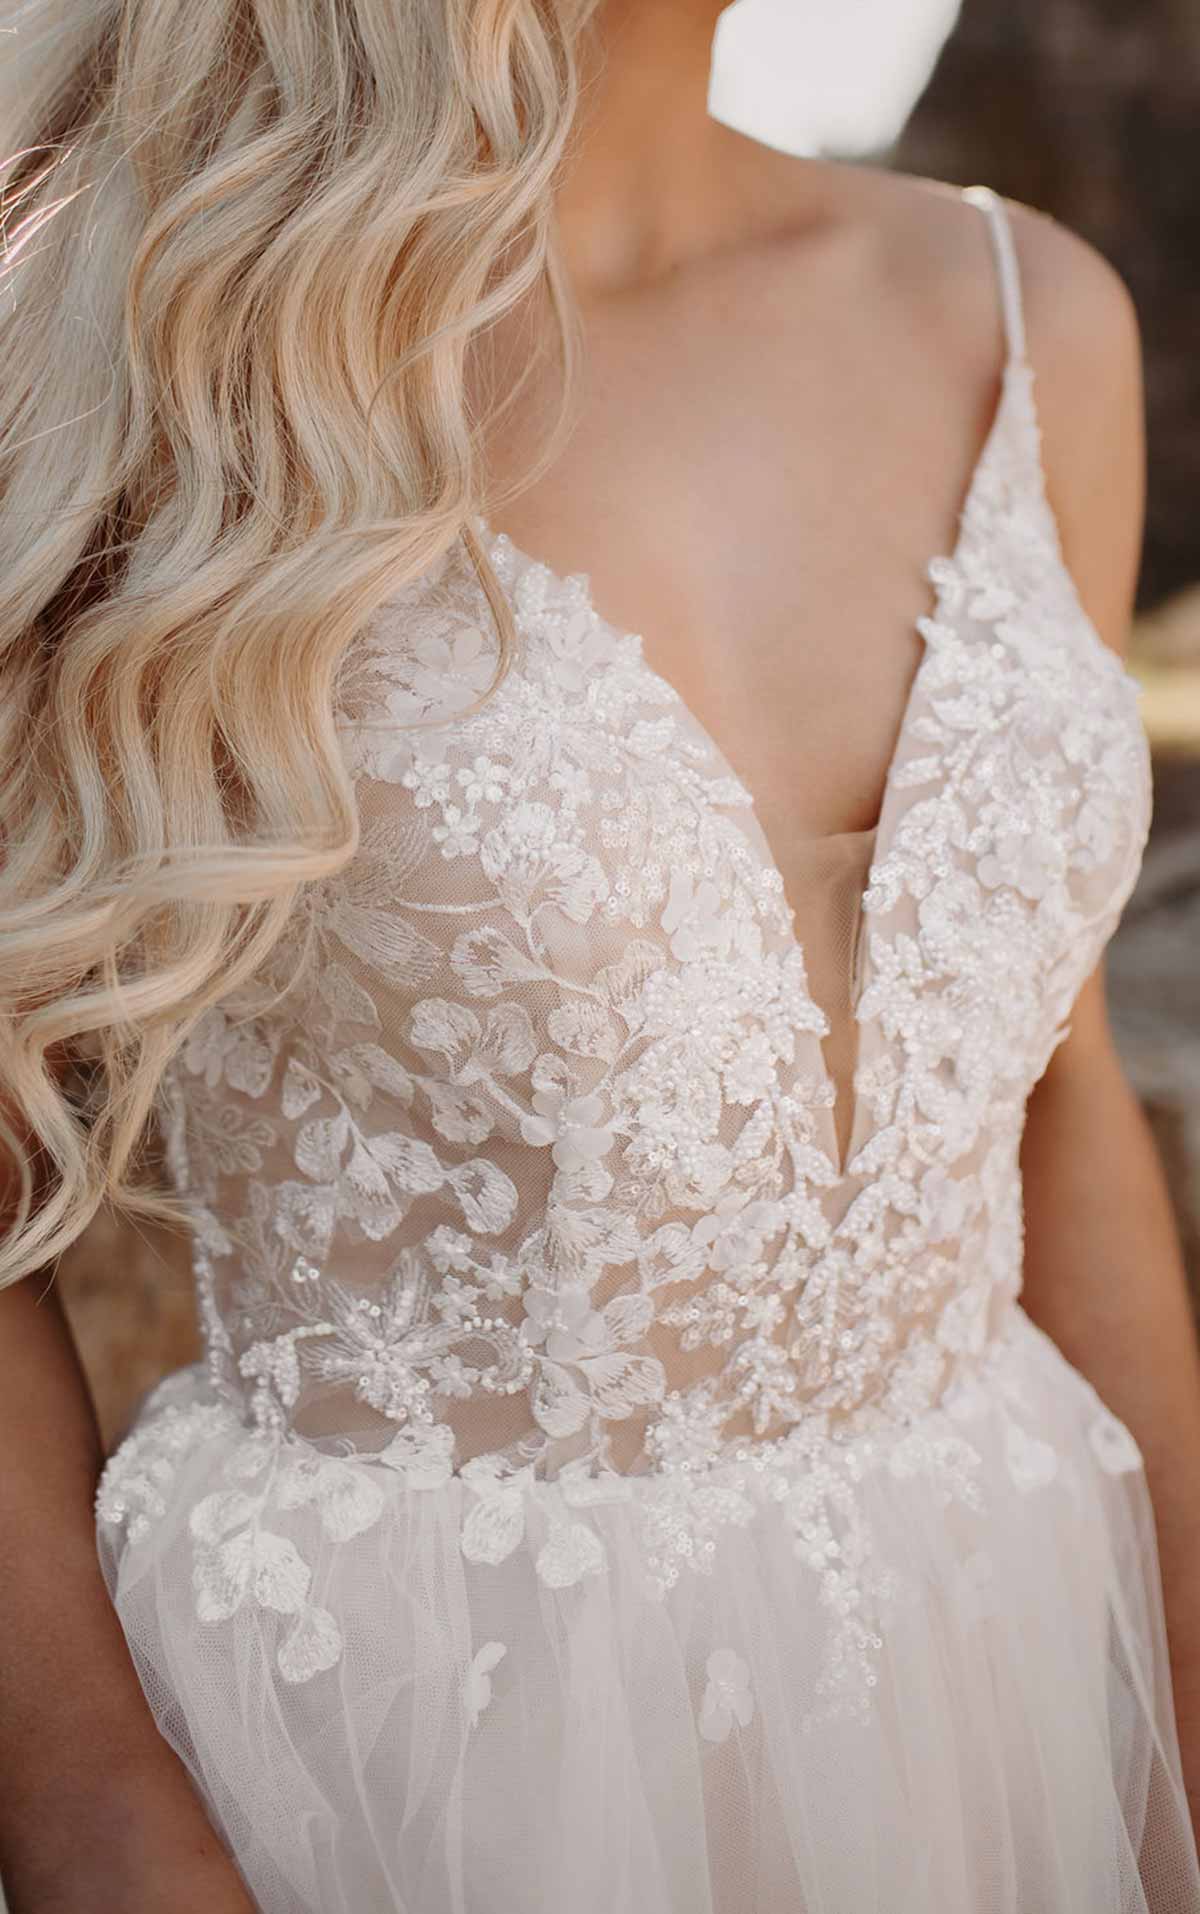 7340 - V-Neckline Wedding Dress with Floral Details